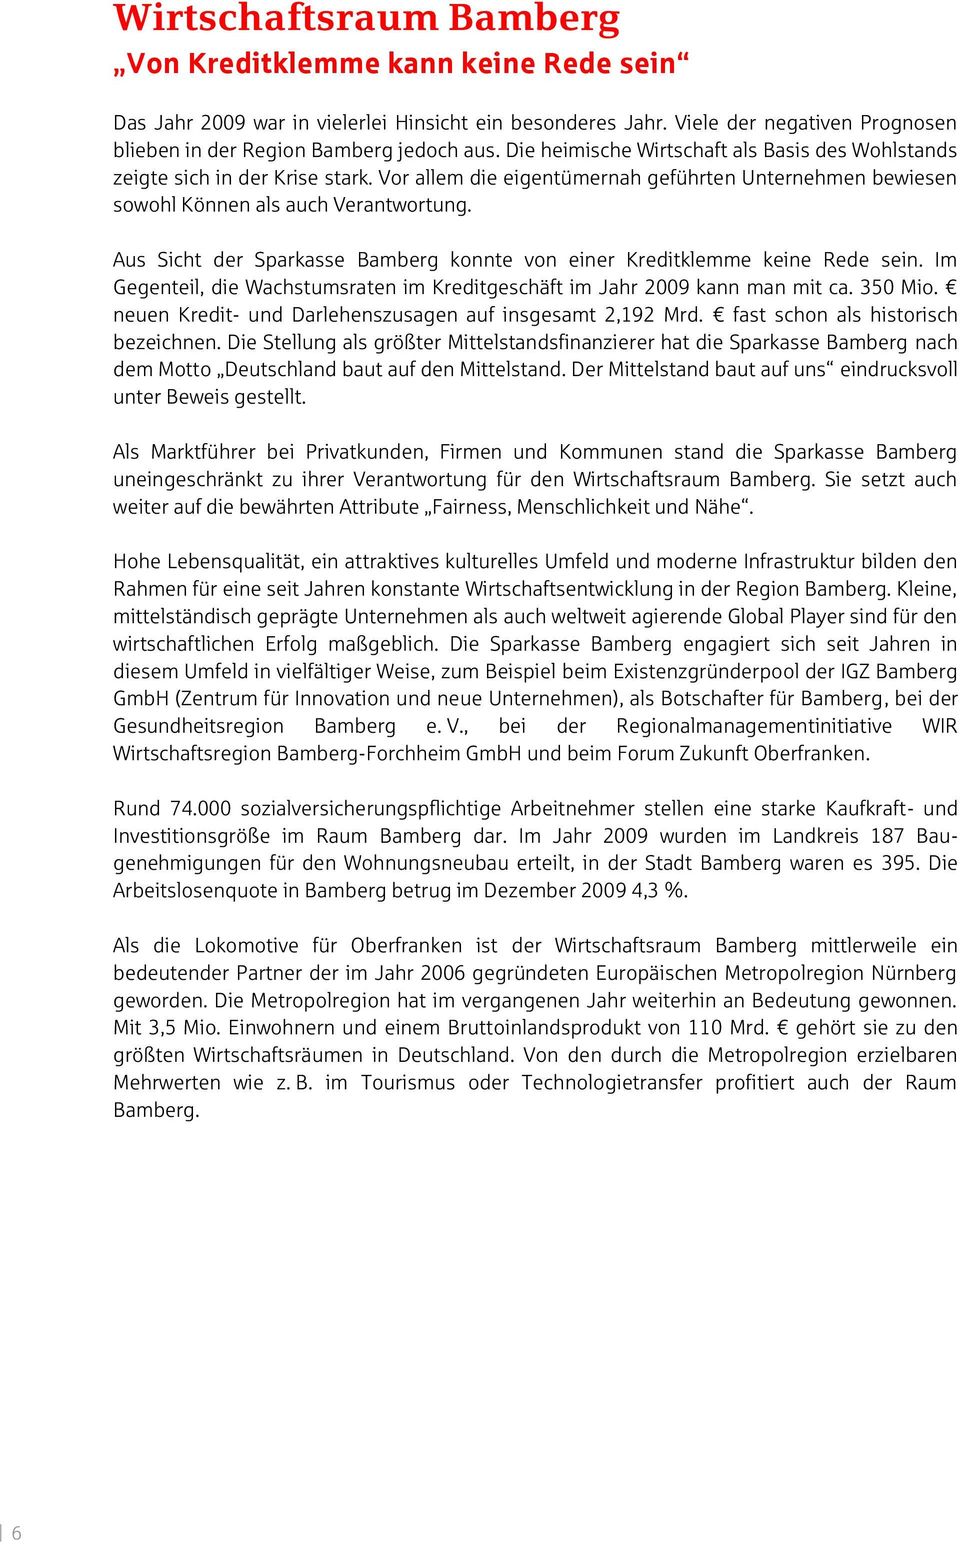 Aus Sicht der Sparkasse Bamberg konnte von einer Kreditklemme keine Rede sein. Im Gegenteil, die Wachstumsraten im Kreditgeschäft im Jahr 2009 kann man mit ca. 350 Mio.